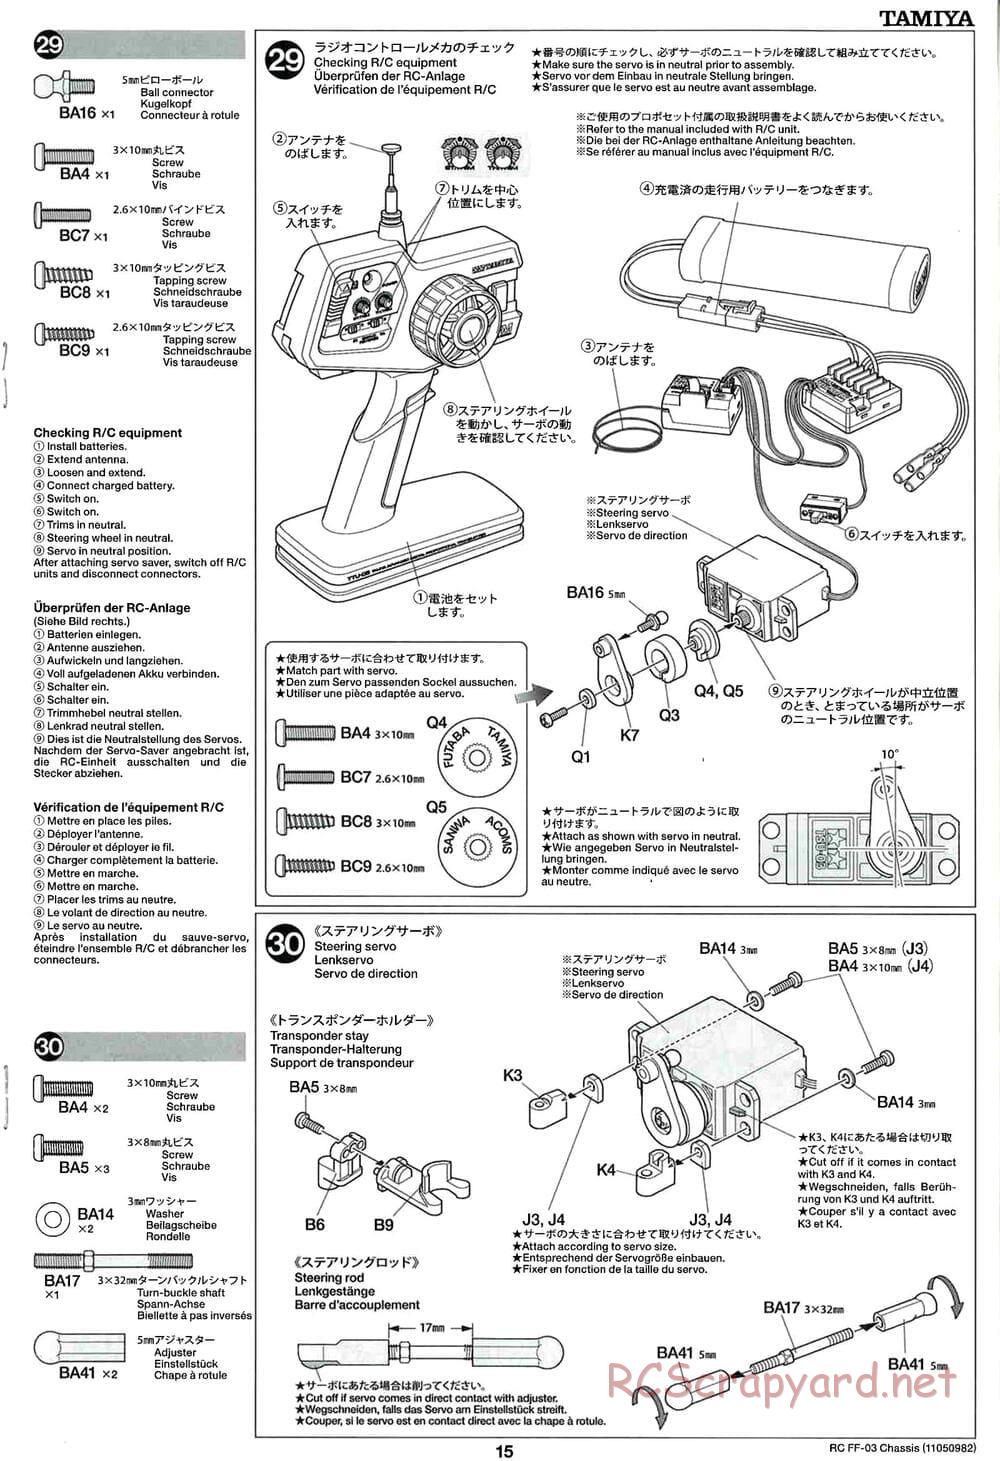 Tamiya - Honda Accord Aero Custom - FF-03 Chassis - Manual - Page 15